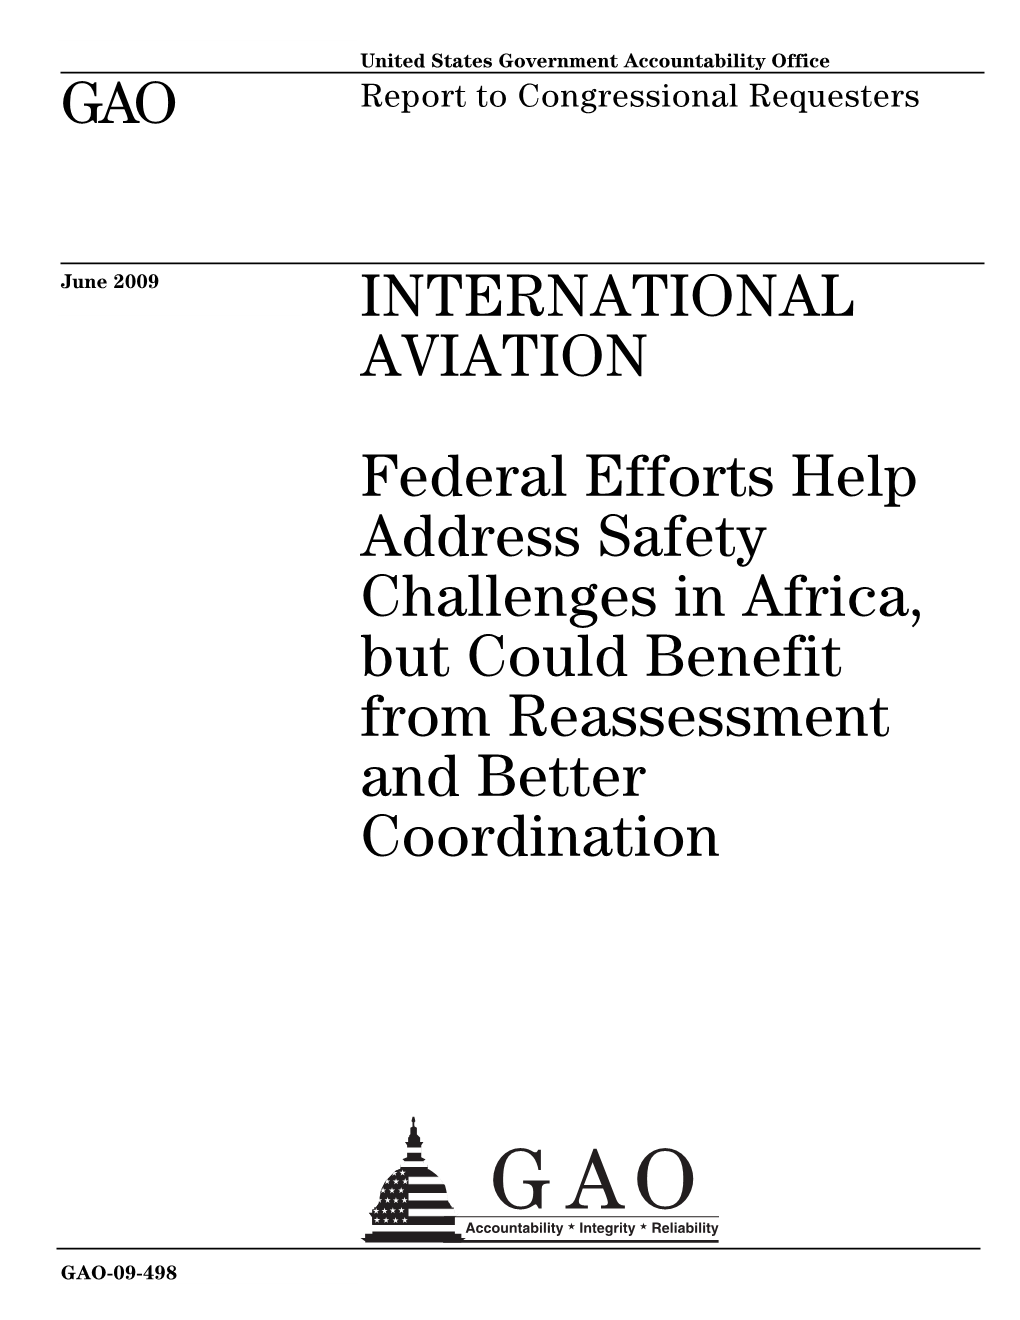 GAO-09-498 International Aviation: Federal Efforts Help Address Safety